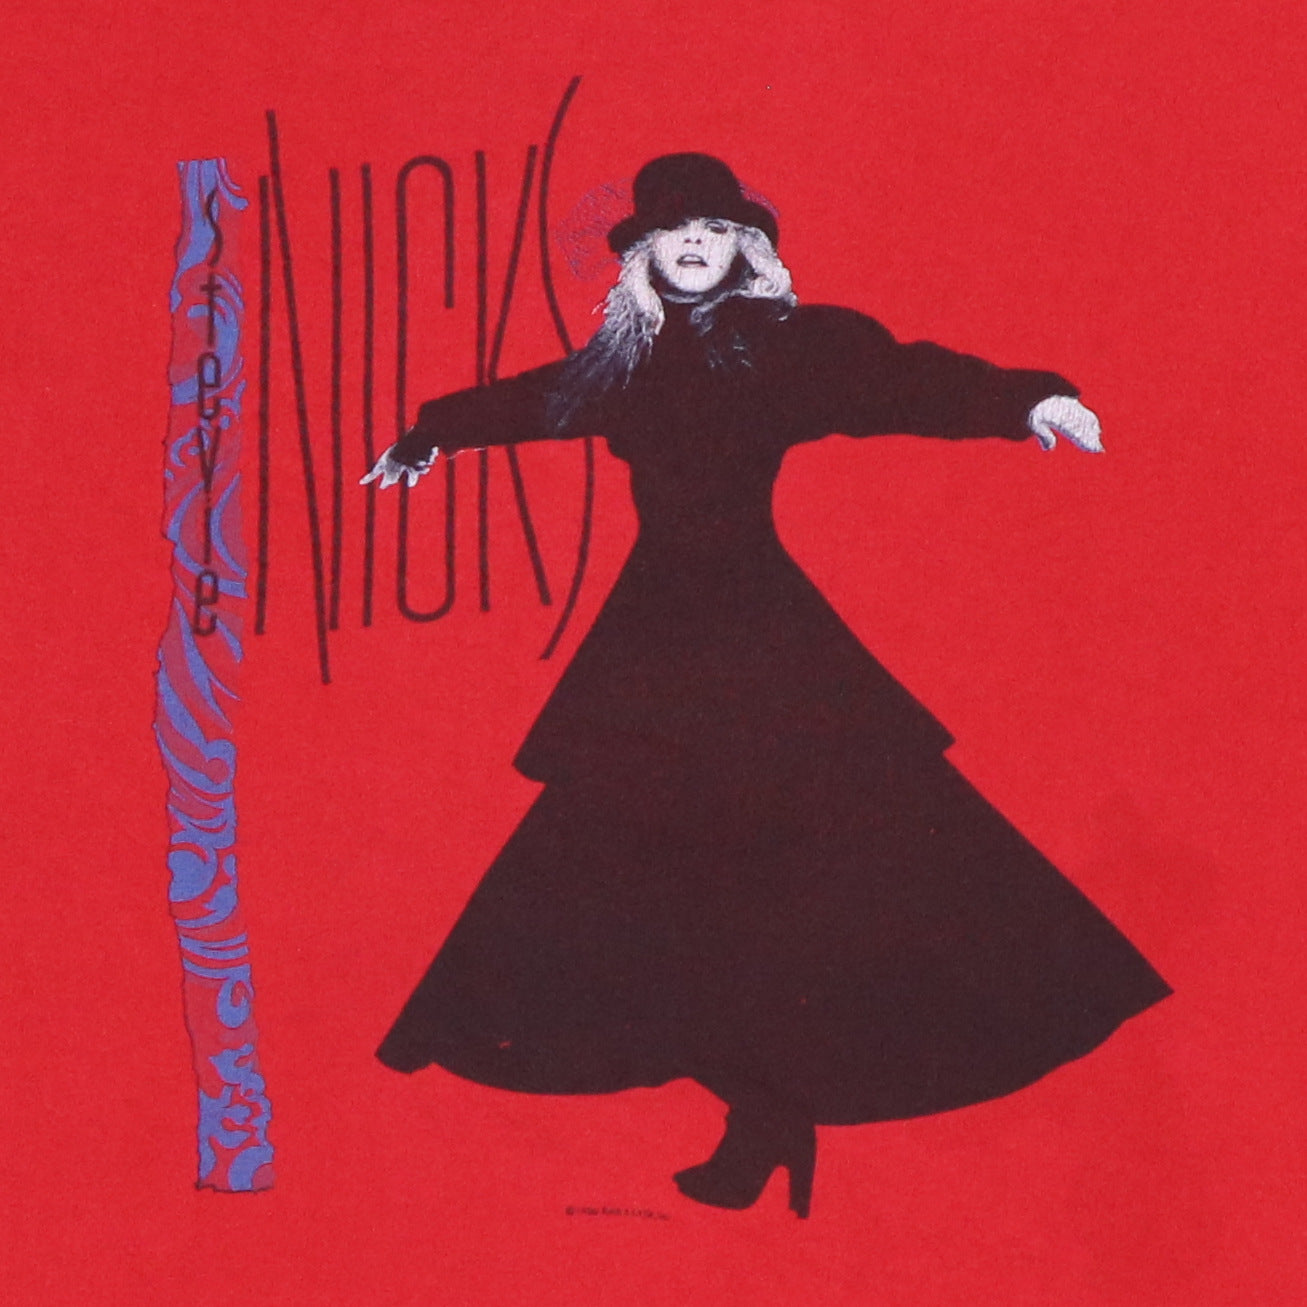 1986 Stevie Nicks Rock A Little Tour Shirt